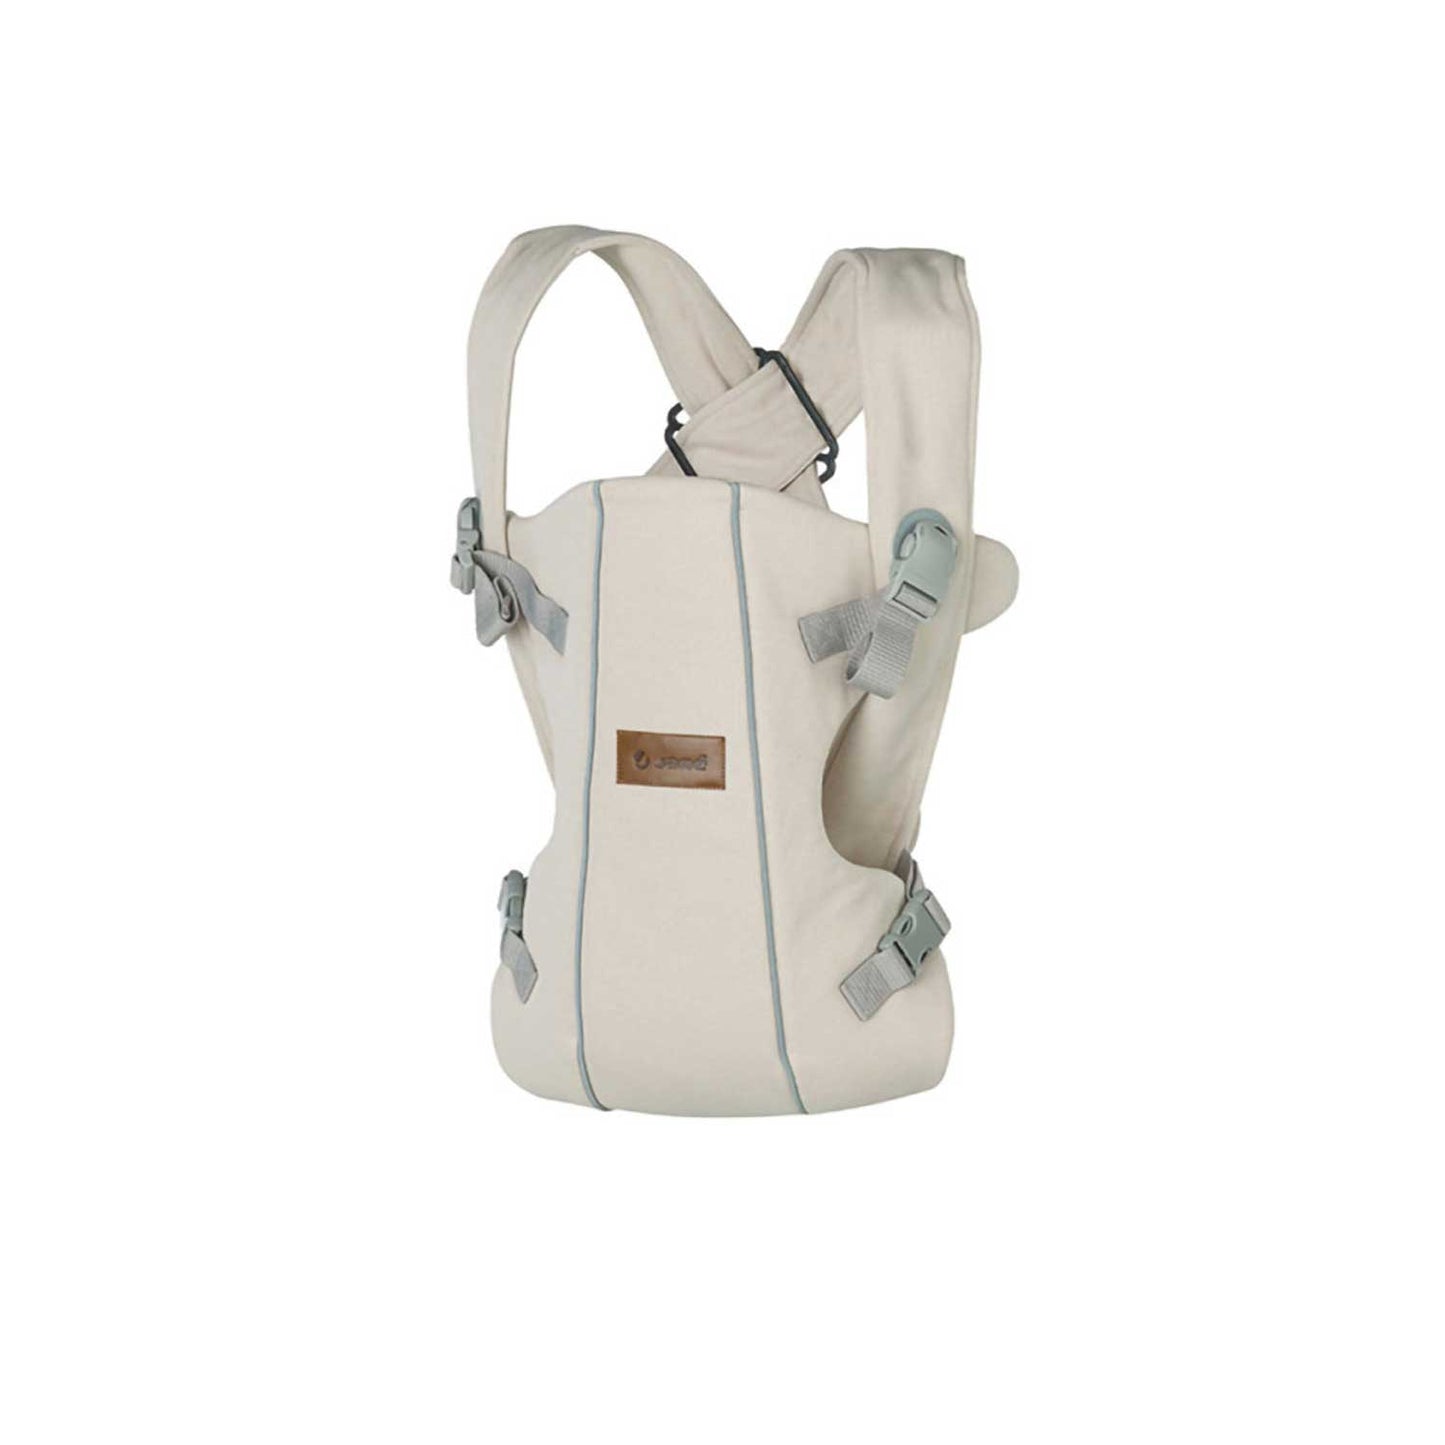 Janè - Dual Baby Carrier Backpack